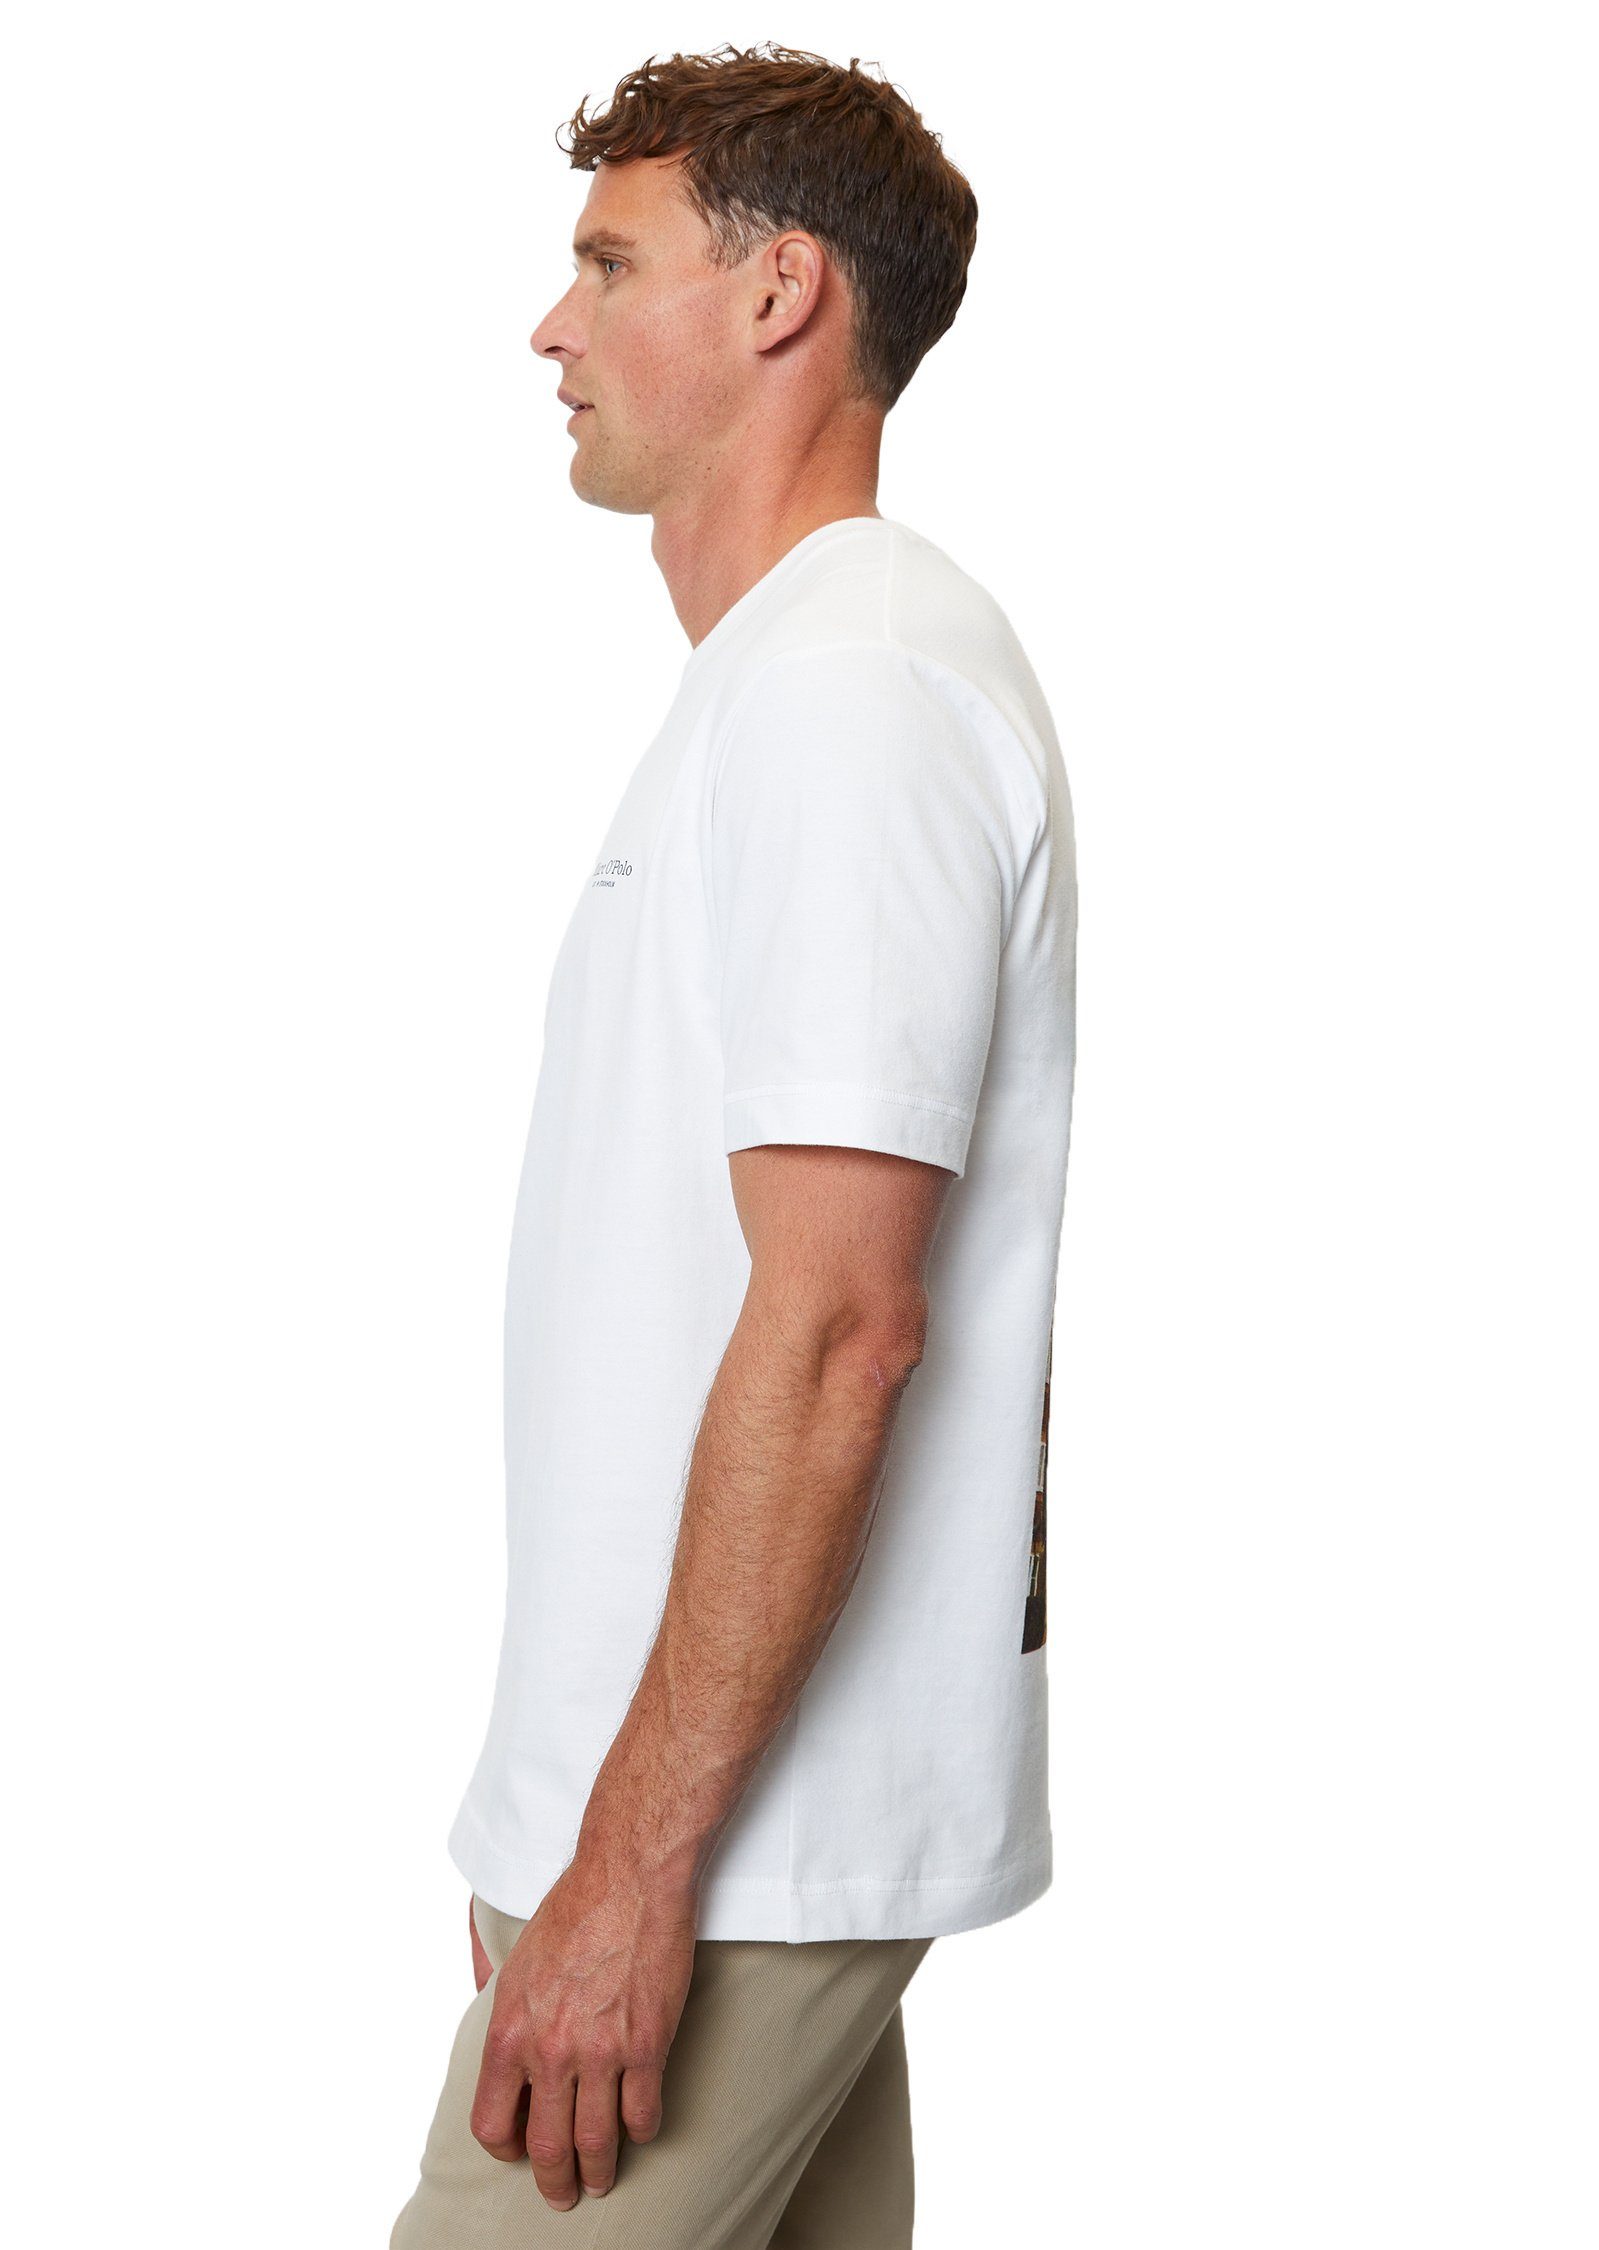 O'Polo Bio-Baumwolle T-Shirt Marc aus